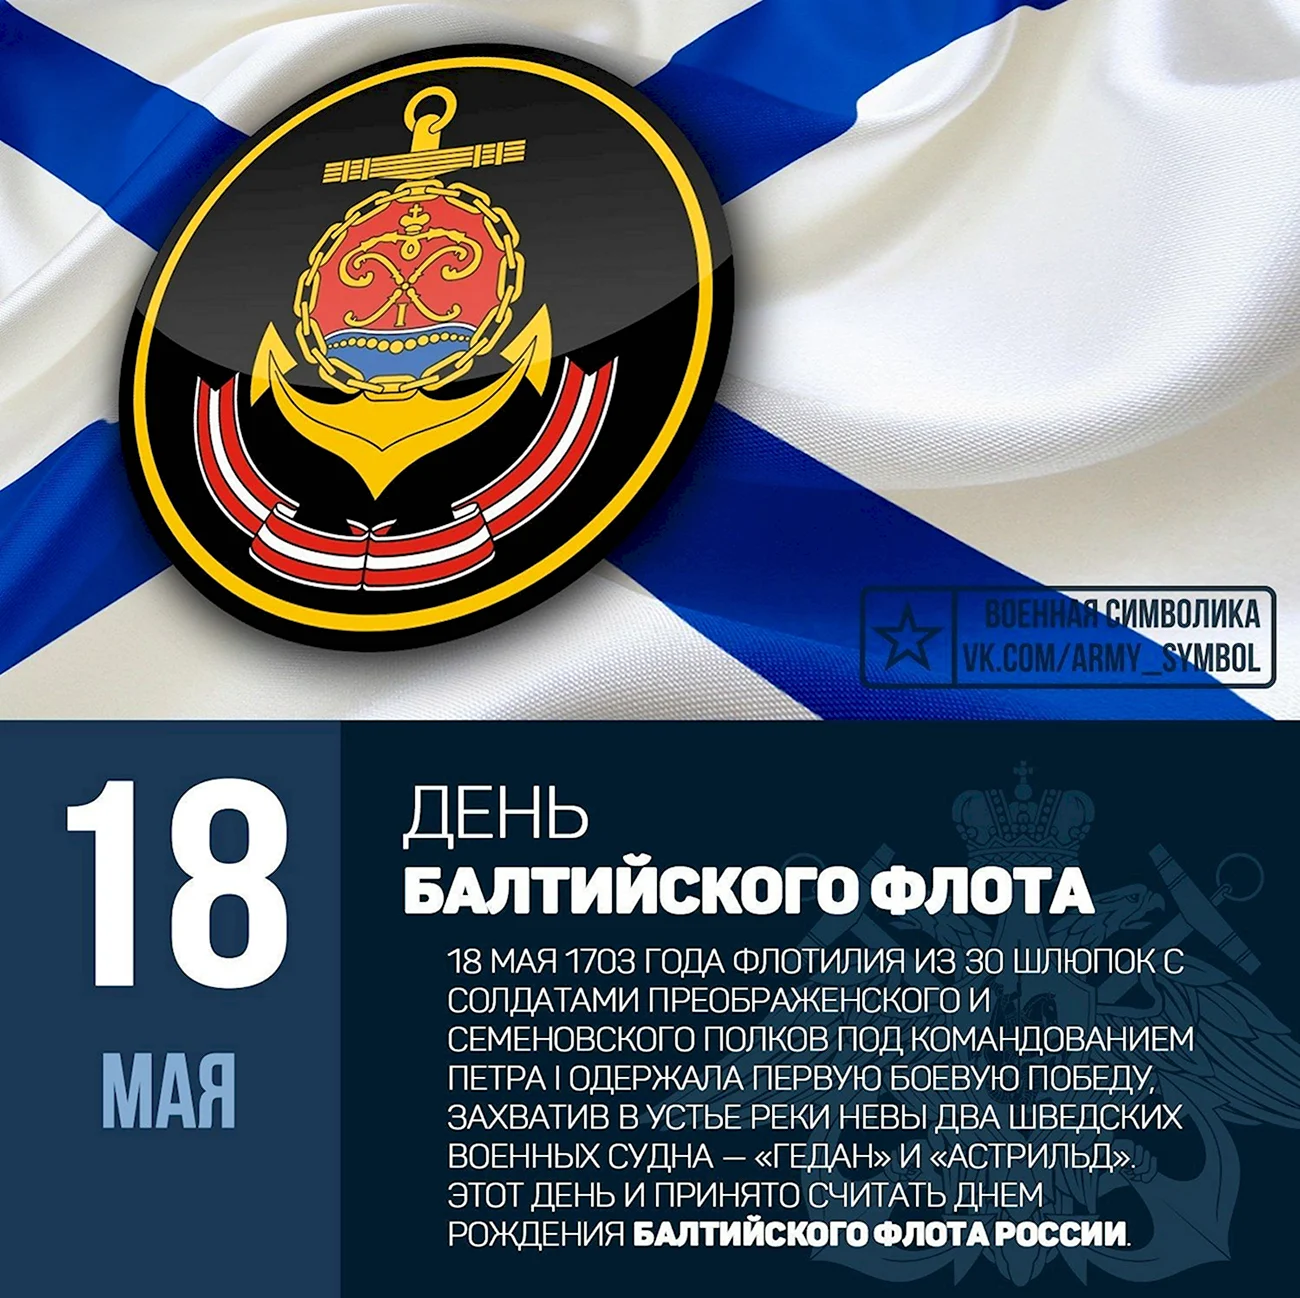 13 Мая день Черноморского флота ВМФ России. Поздравление